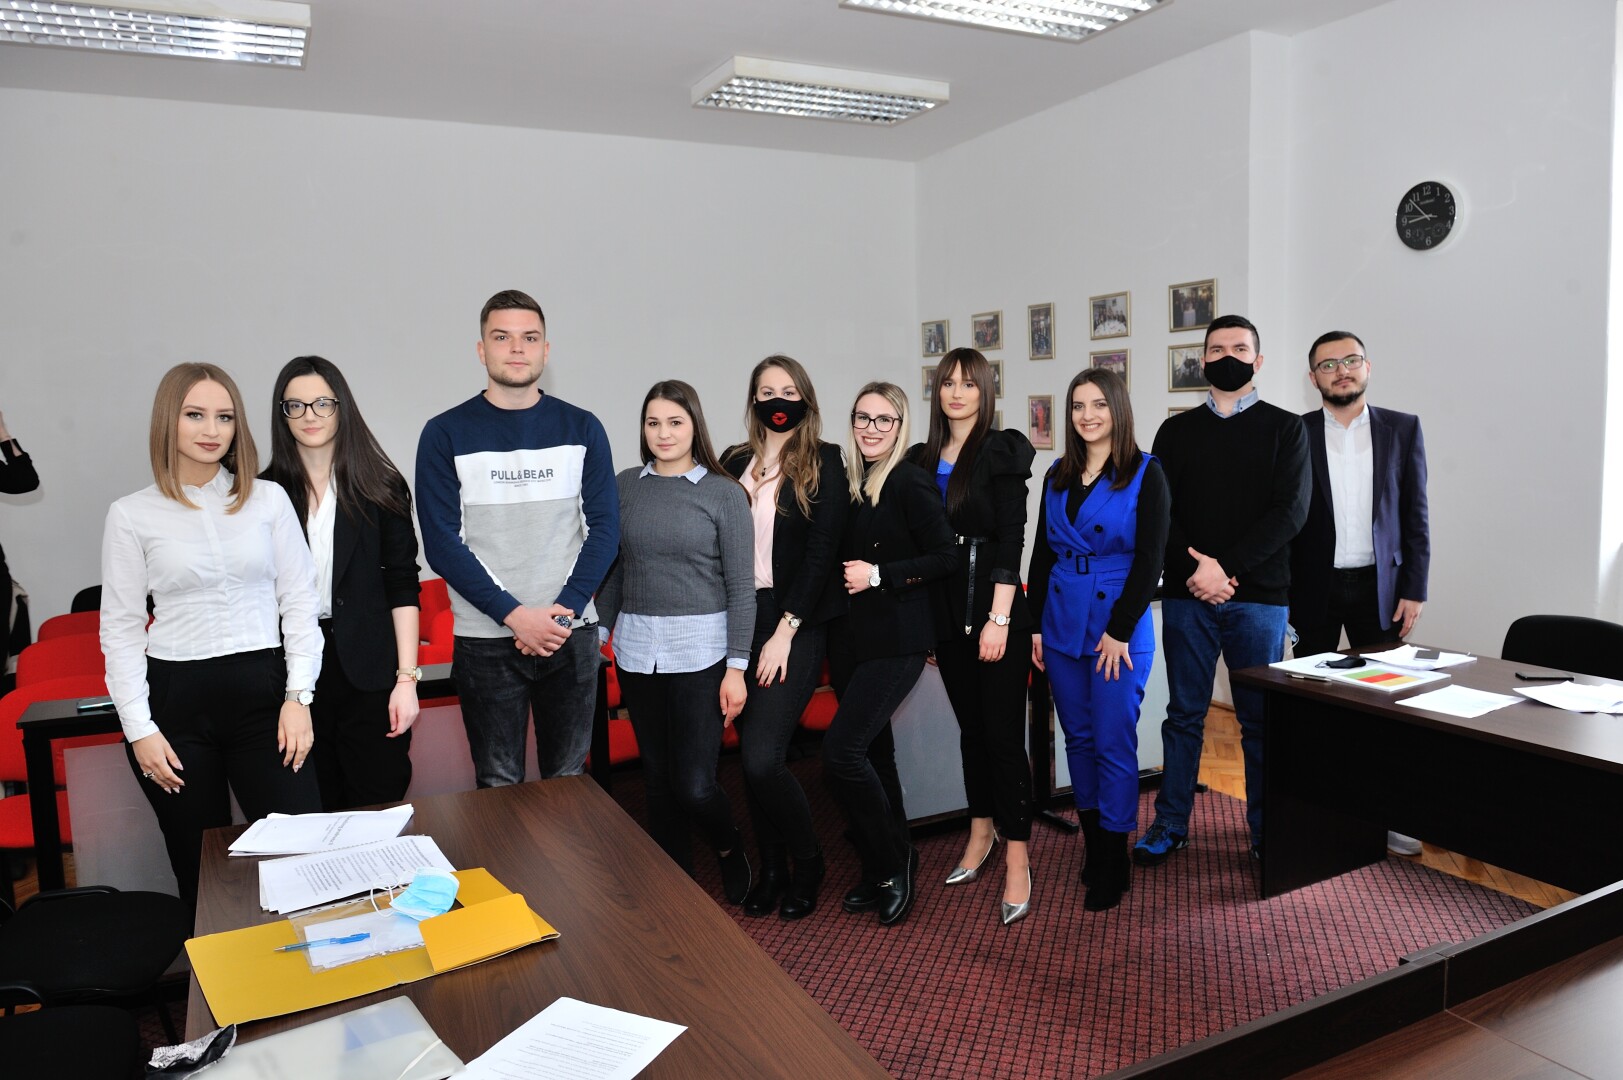 Utisci studenata Pravnog fakulteta Univerziteta “Džemal Bijedić” u Mostaru 2020/2021